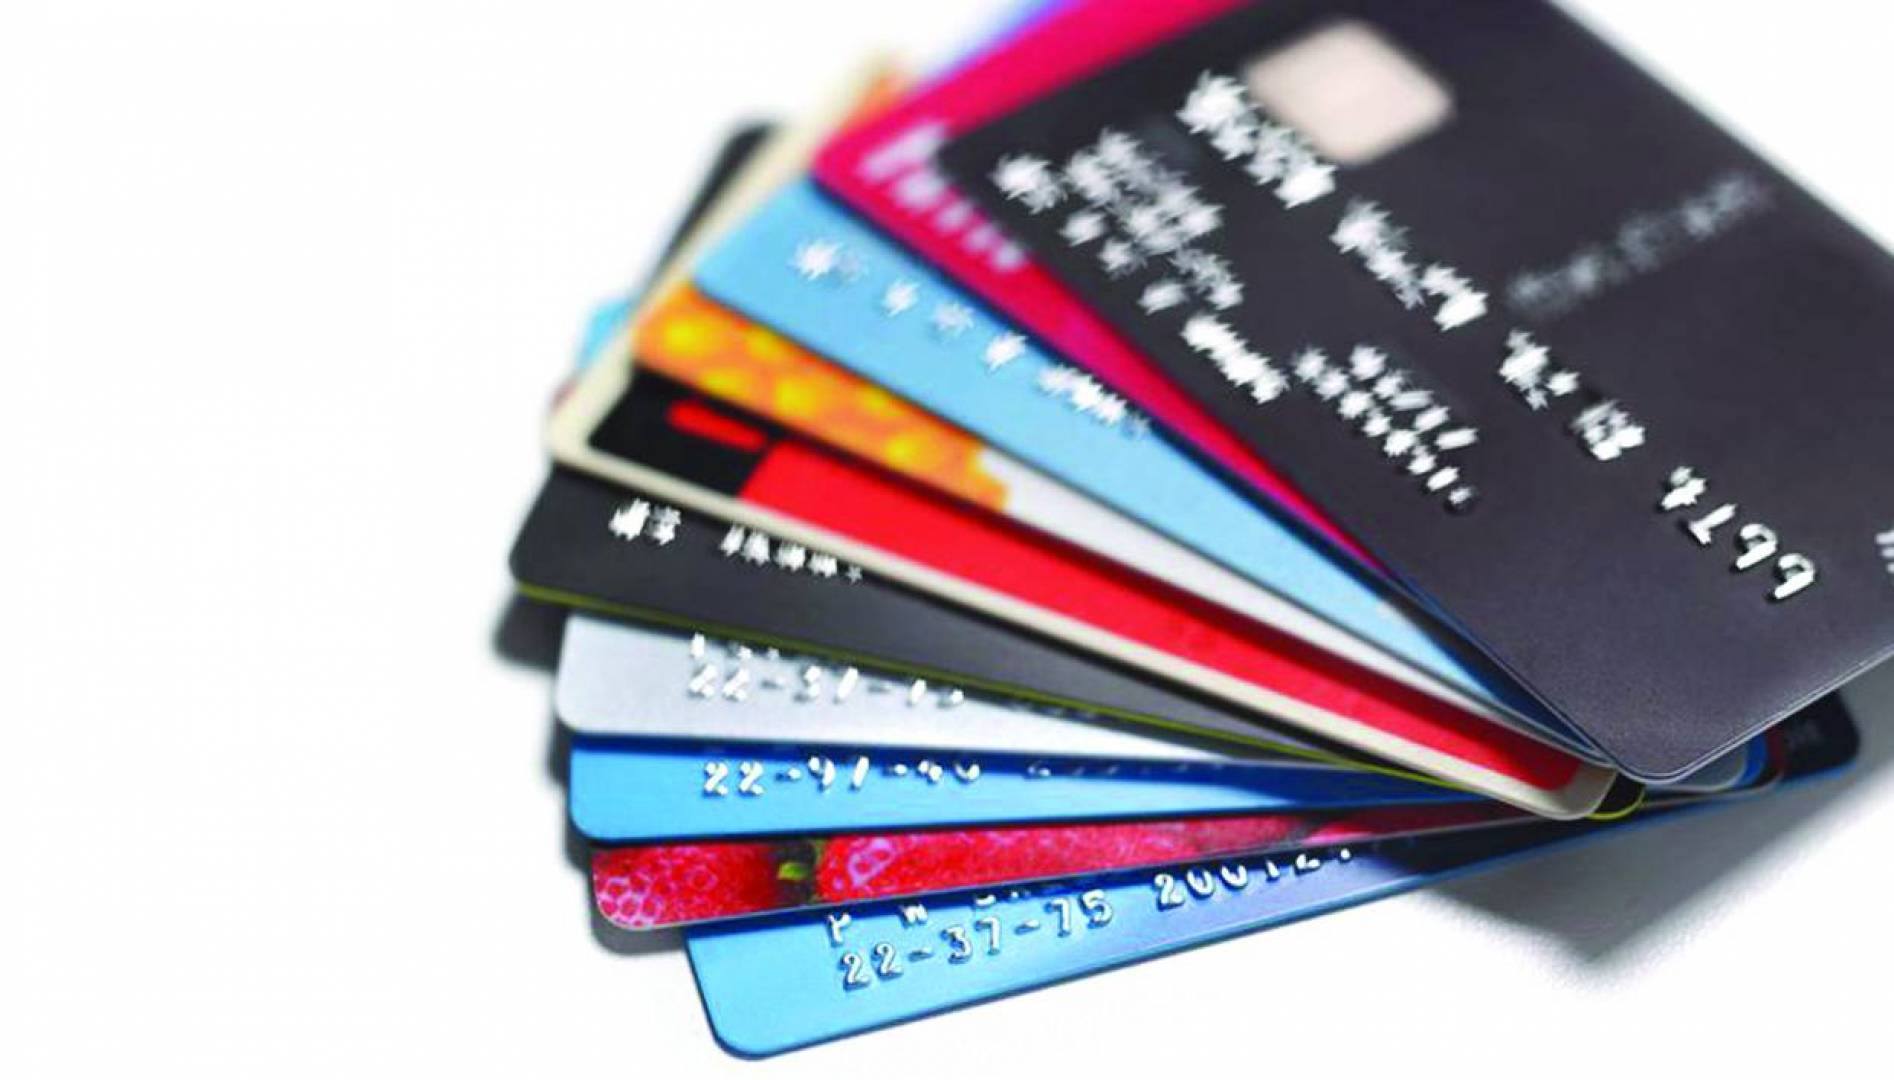 كيفية عمل بطاقة ائتمان خاصة بك وما الفرق بين بطاقات الائتمان وبطاقات المدفوعة مقدما؟